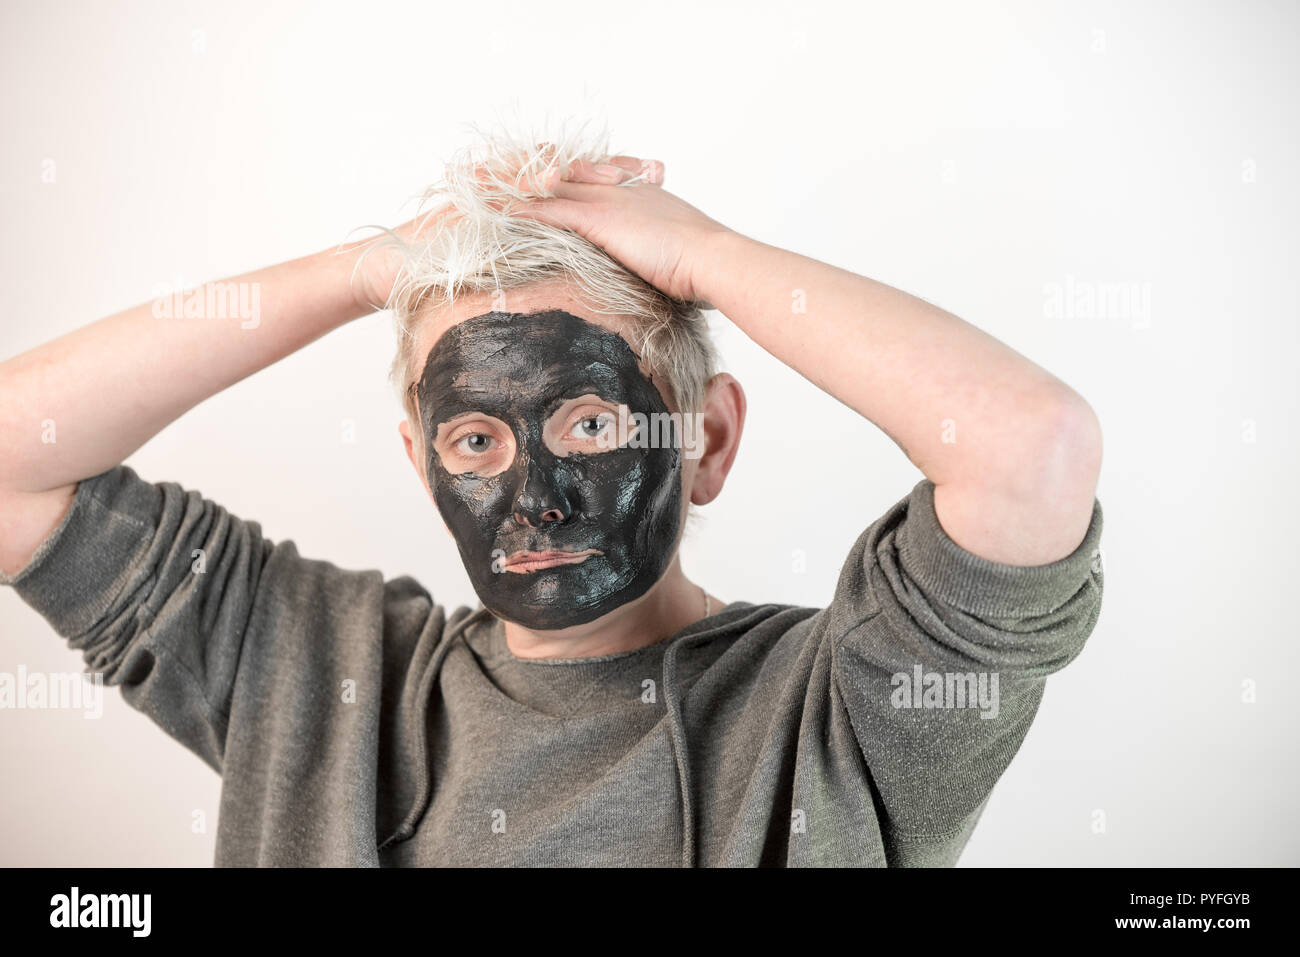 Montrer les émotions pures - visage d'une femme avec un masque noir montrant différentes émotions Banque D'Images